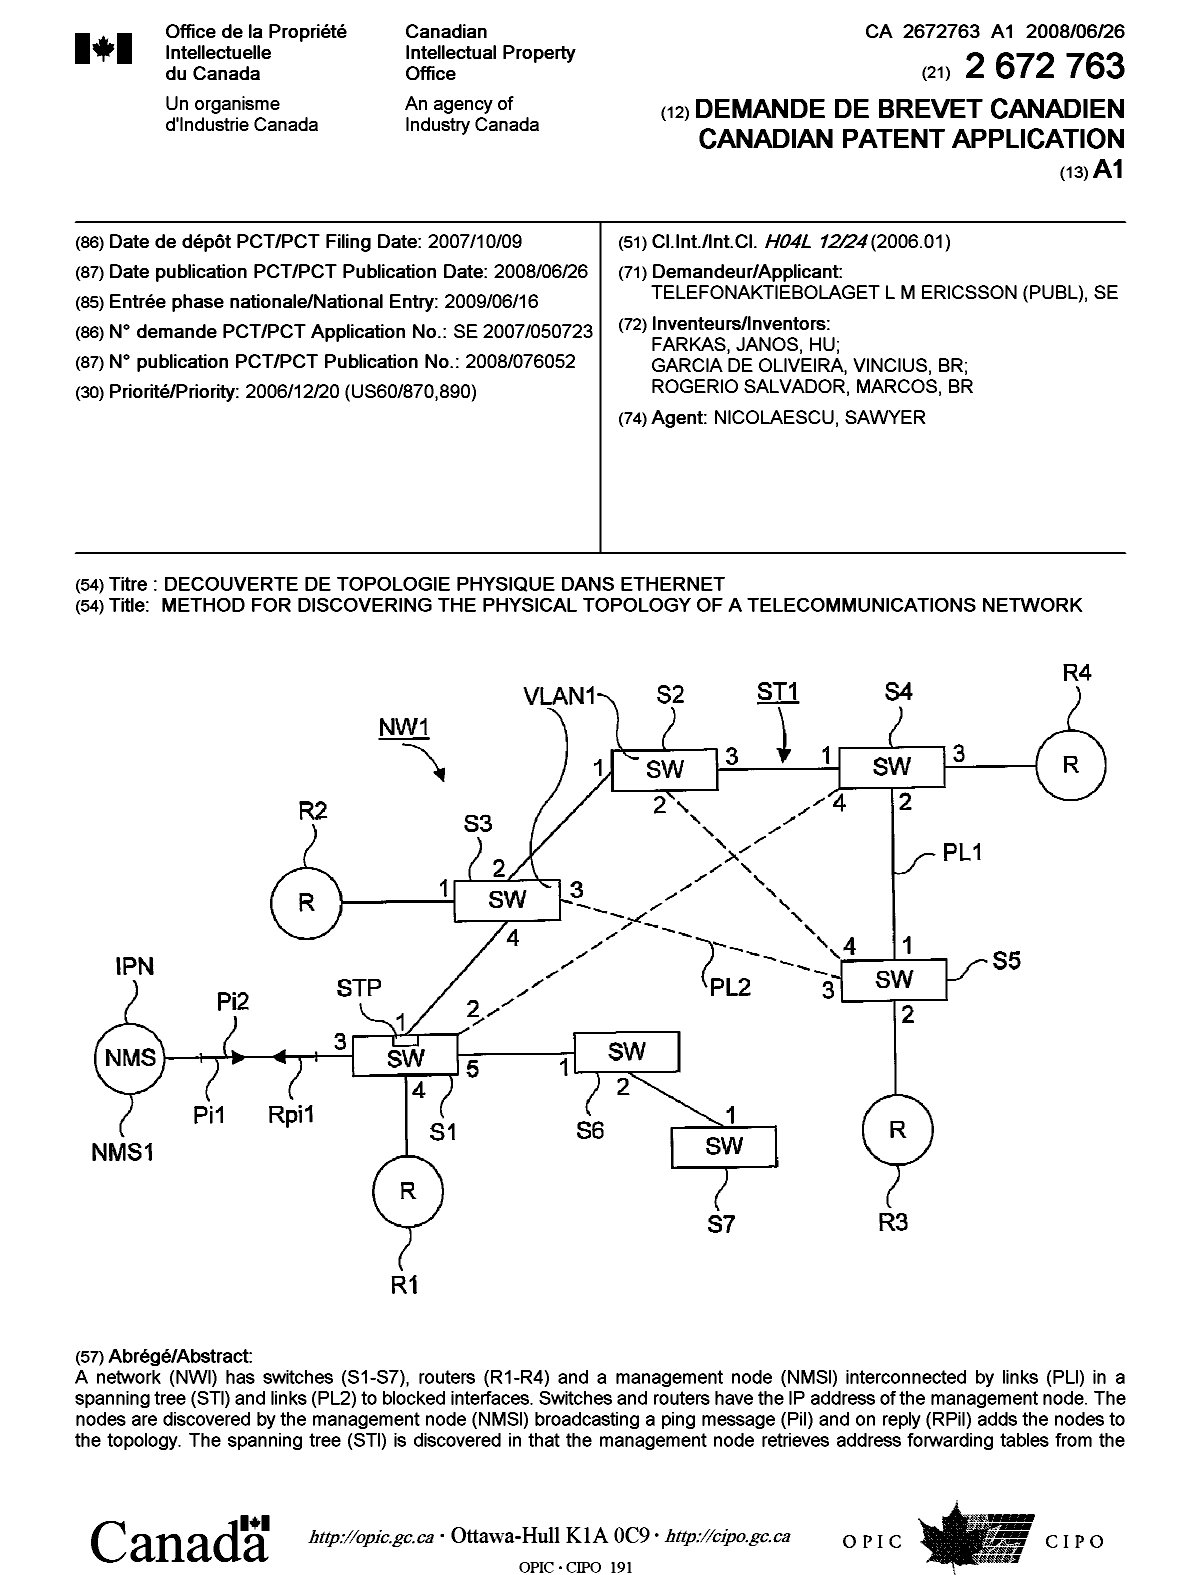 Document de brevet canadien 2672763. Page couverture 20100105. Image 1 de 2